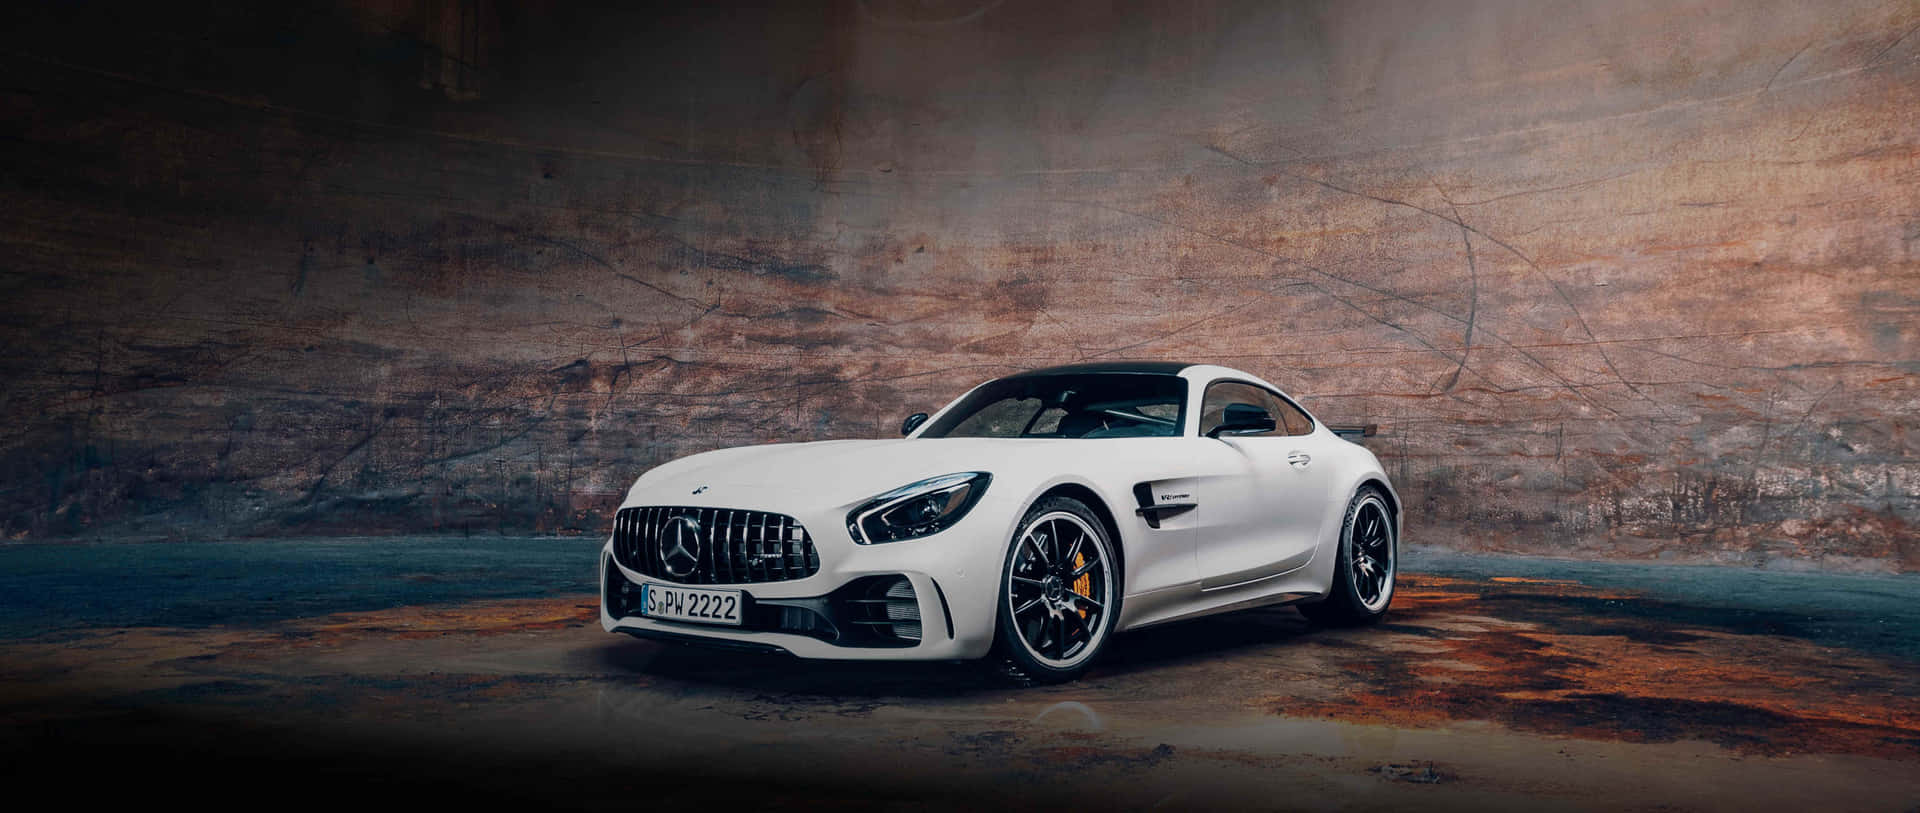 Højydelse af luksus i form af Mercedes-AMG GT. Wallpaper